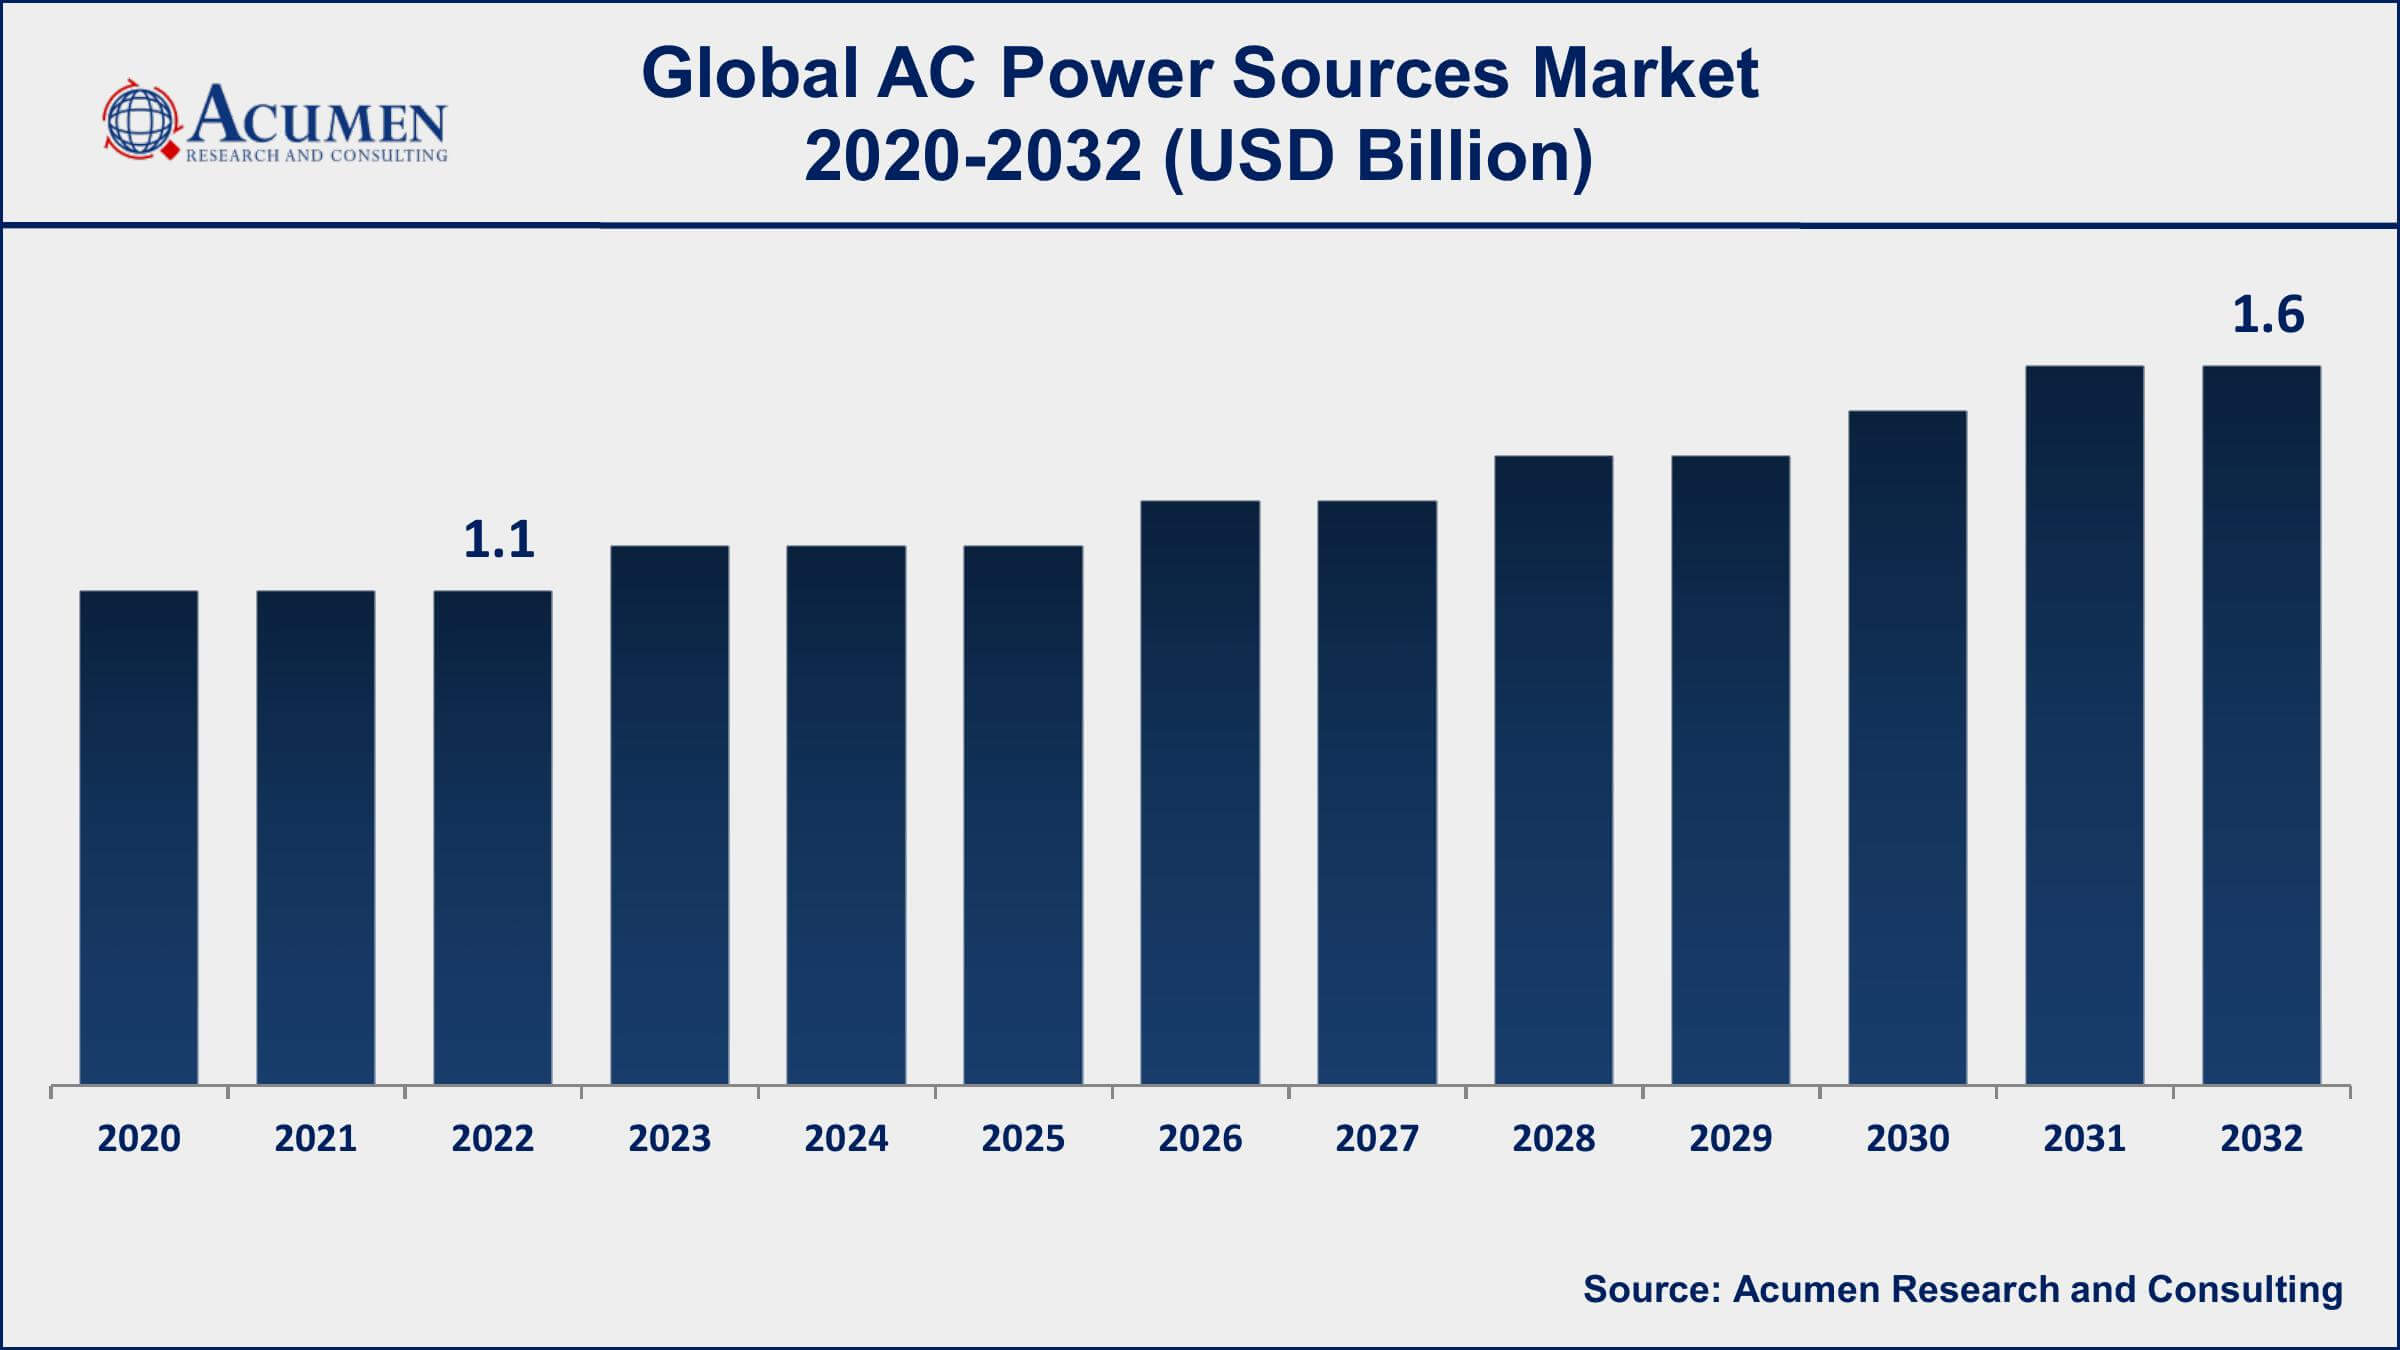 AC Power Sources Market Dynamics